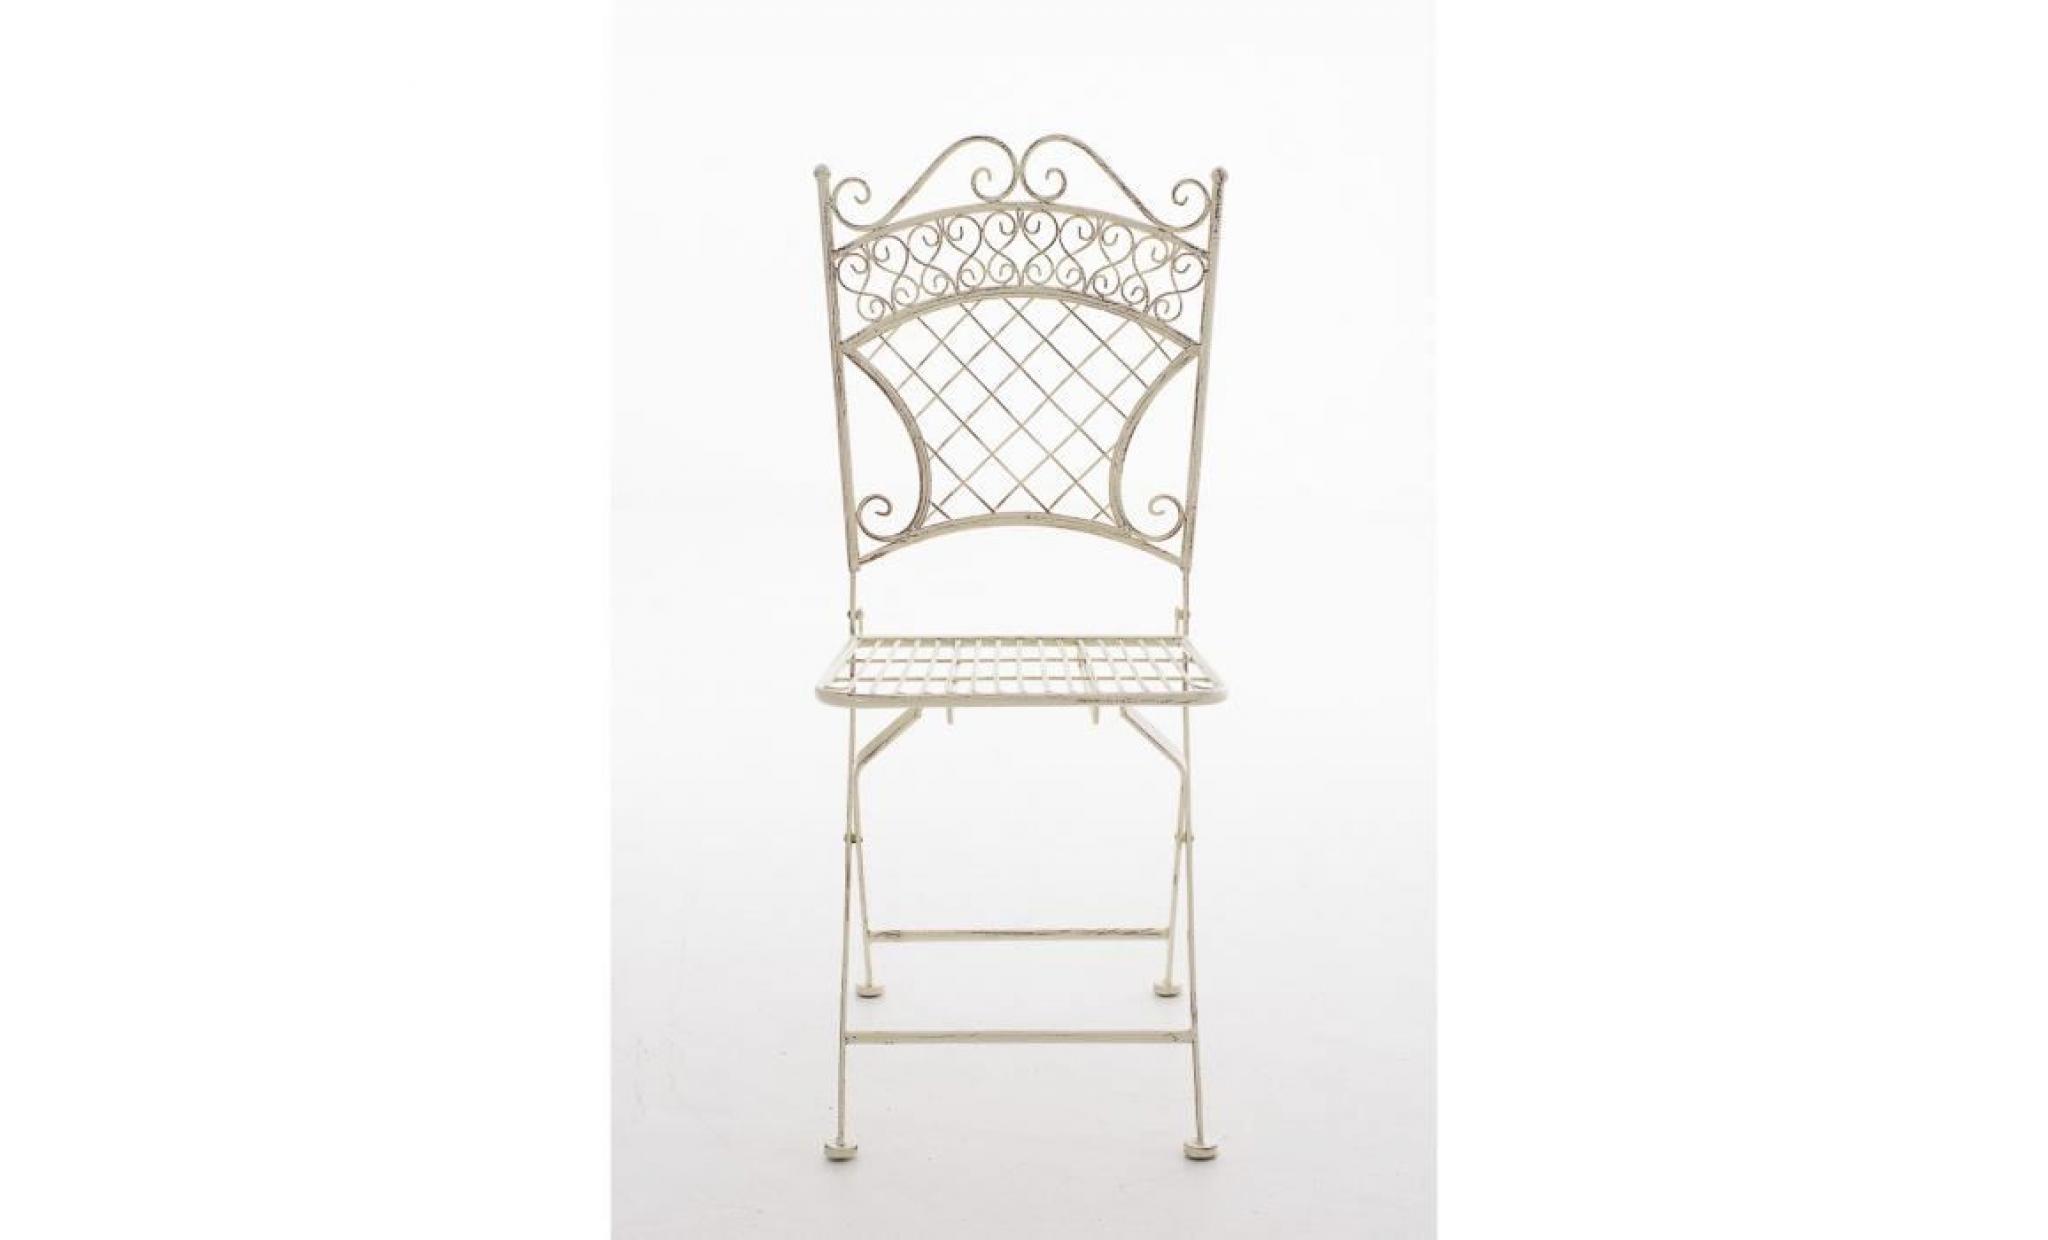 clp chaise nostalgique pliable adelar, en fer forgé, chaise en fer style nostalgique, ultra élégant, 6 couleurs au choix94 cm   c... pas cher